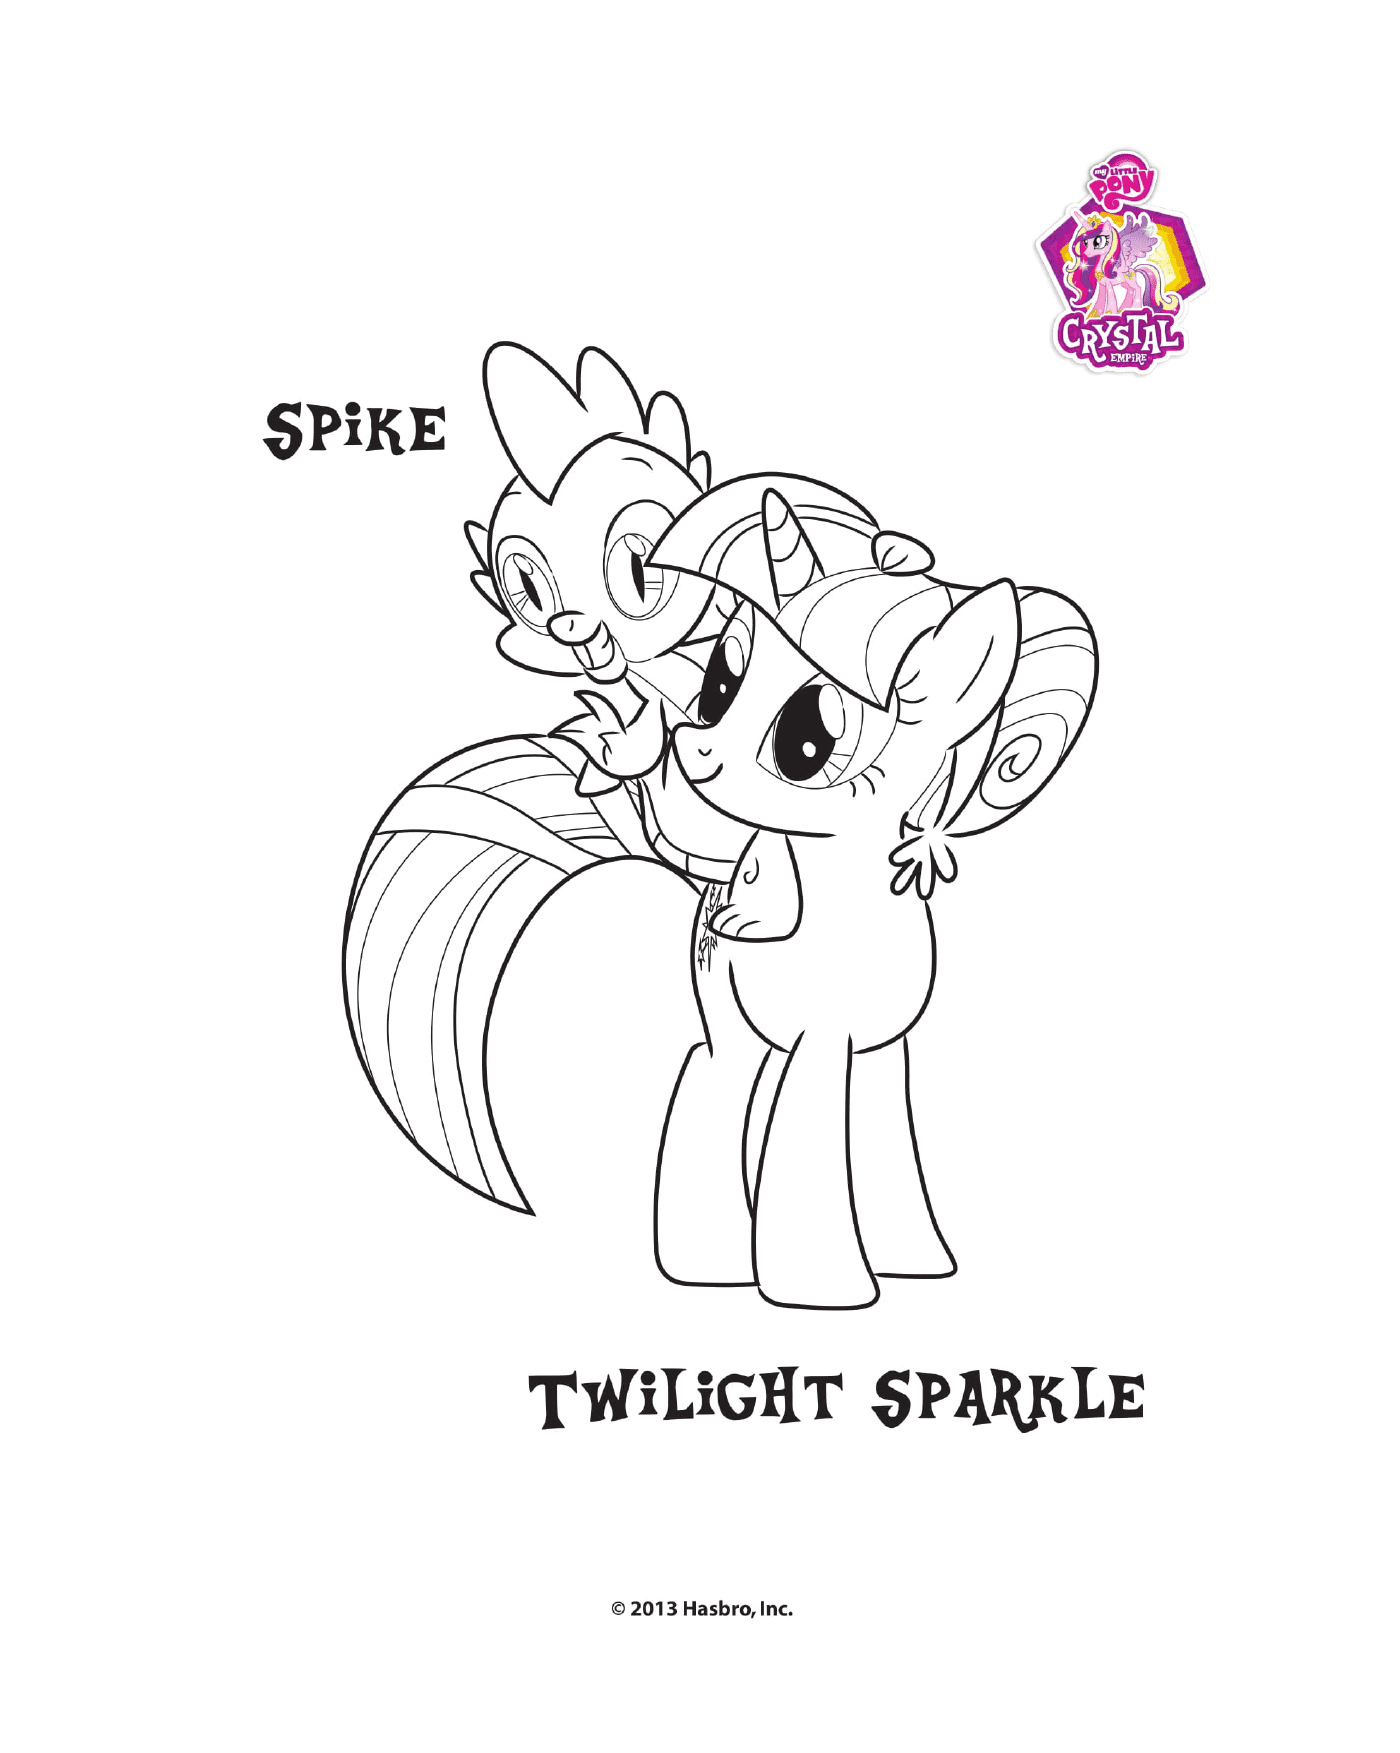  Spike und Twilight Sparkle im Kristallreich 